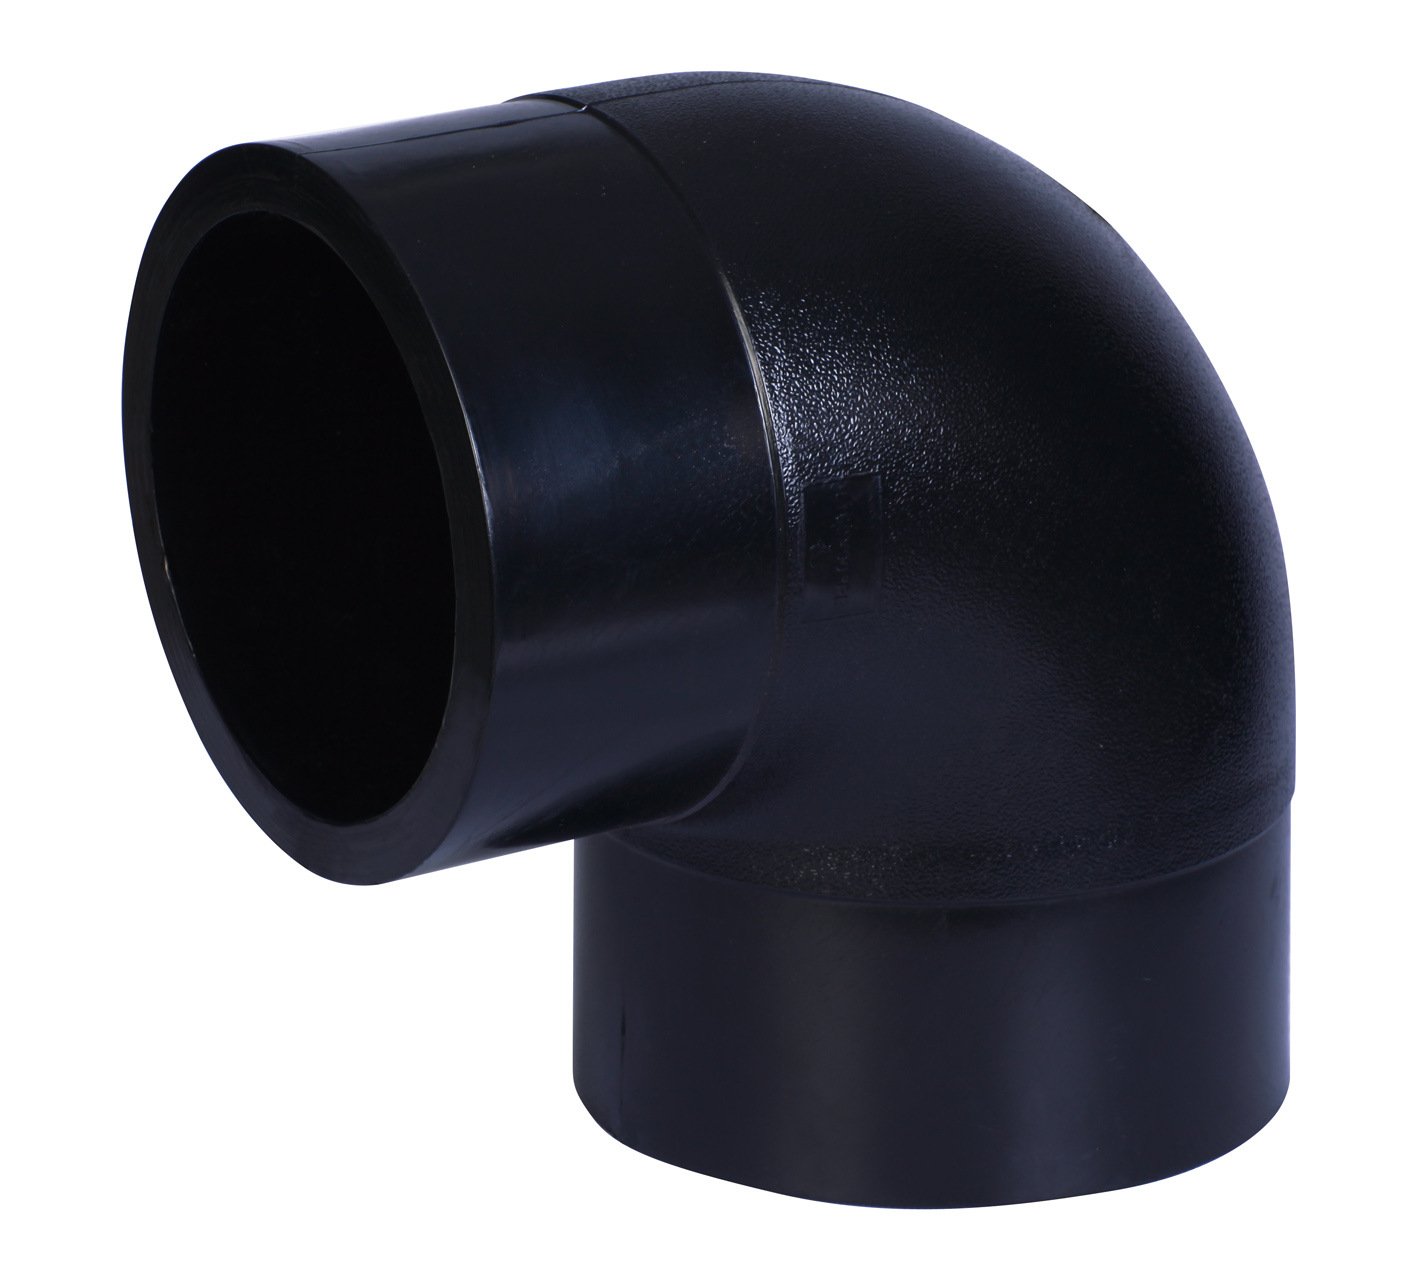 HDPE塑料弯头管件产品/45°90°弯头管件/注塑成型产品/生产厂家示例图11